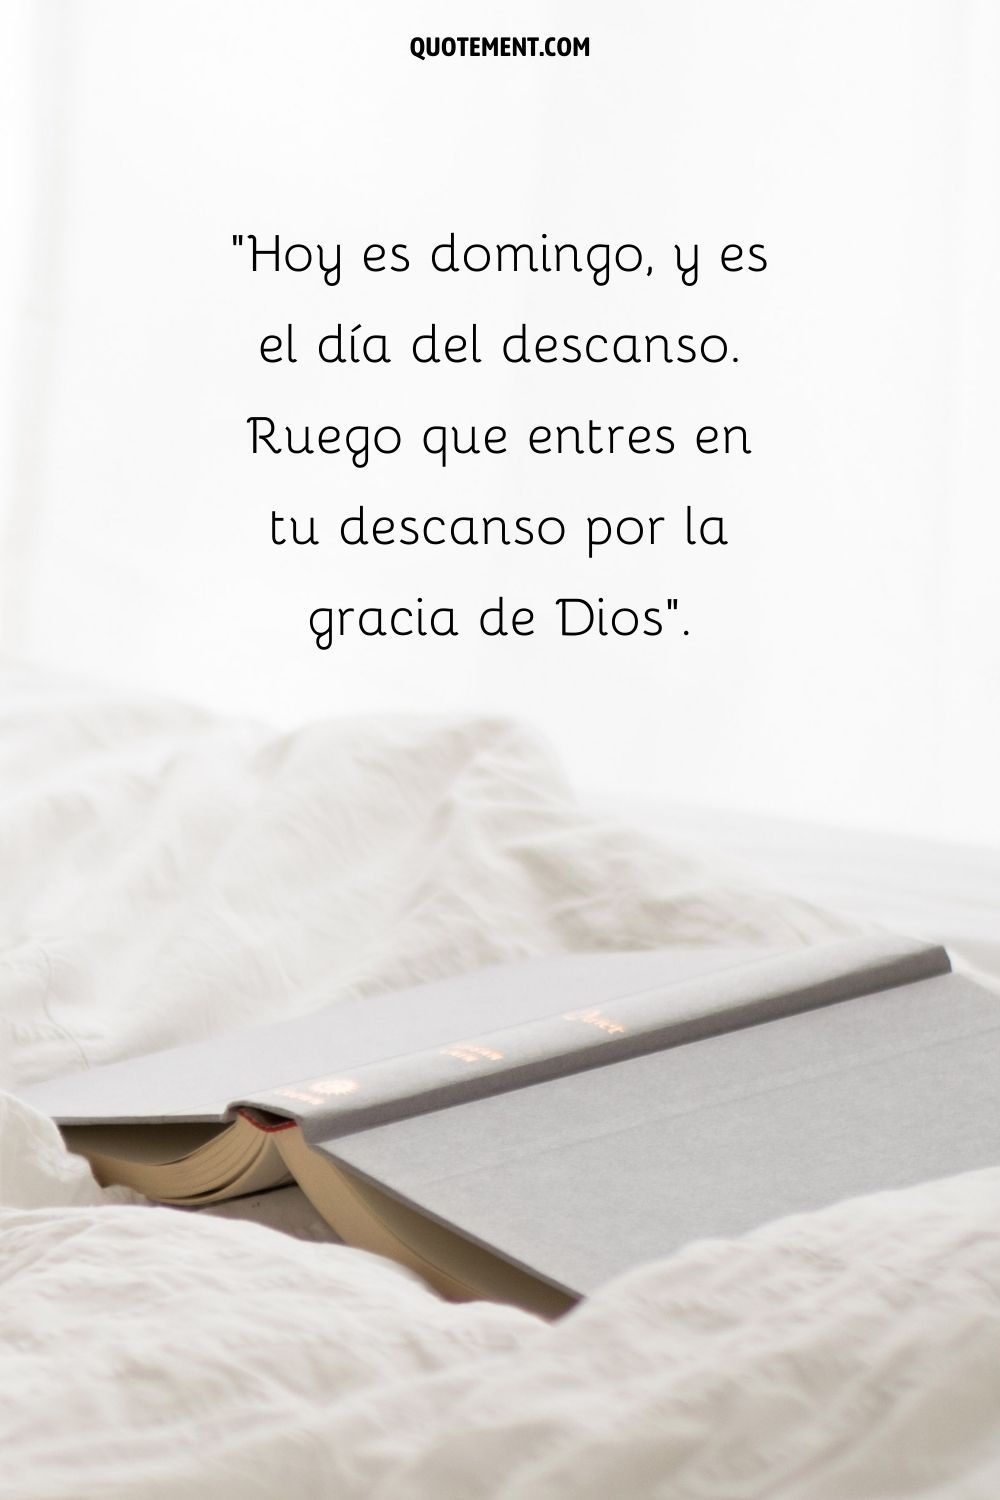 libro abierto sobre la cama que representa el mensaje de buenos días del domingo